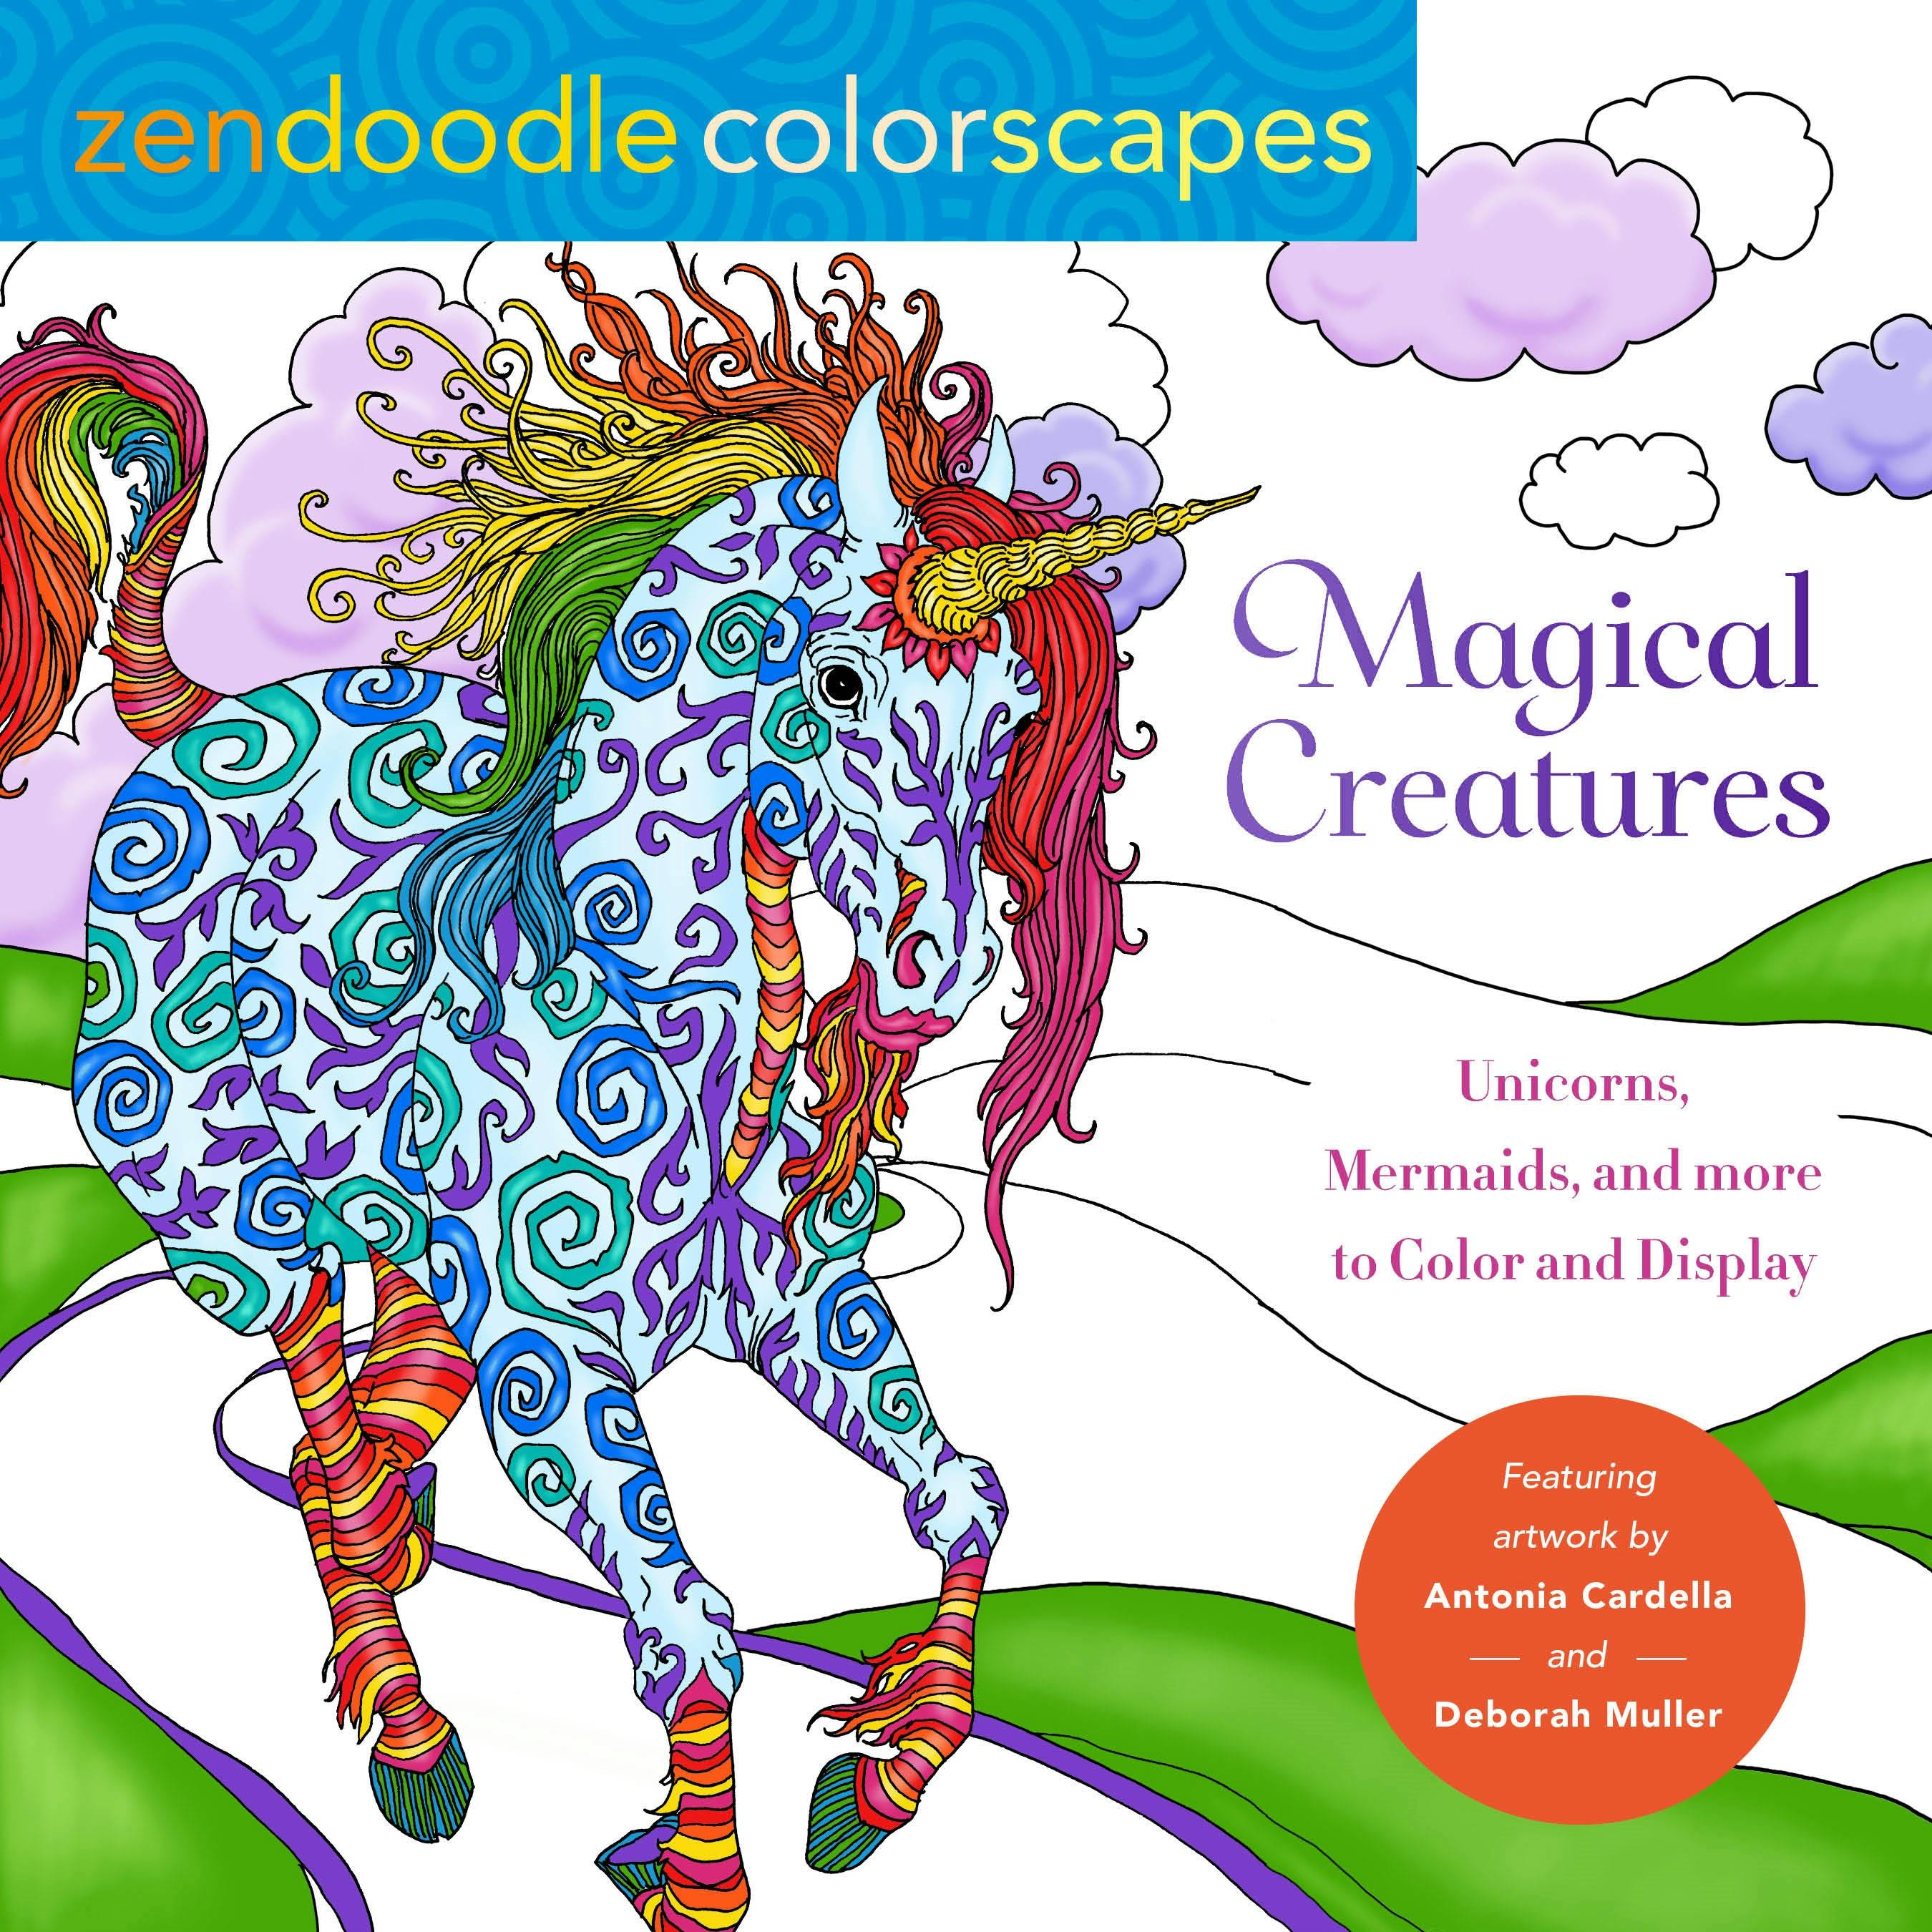 Zendoodle Colorscapes: Magical Creatures